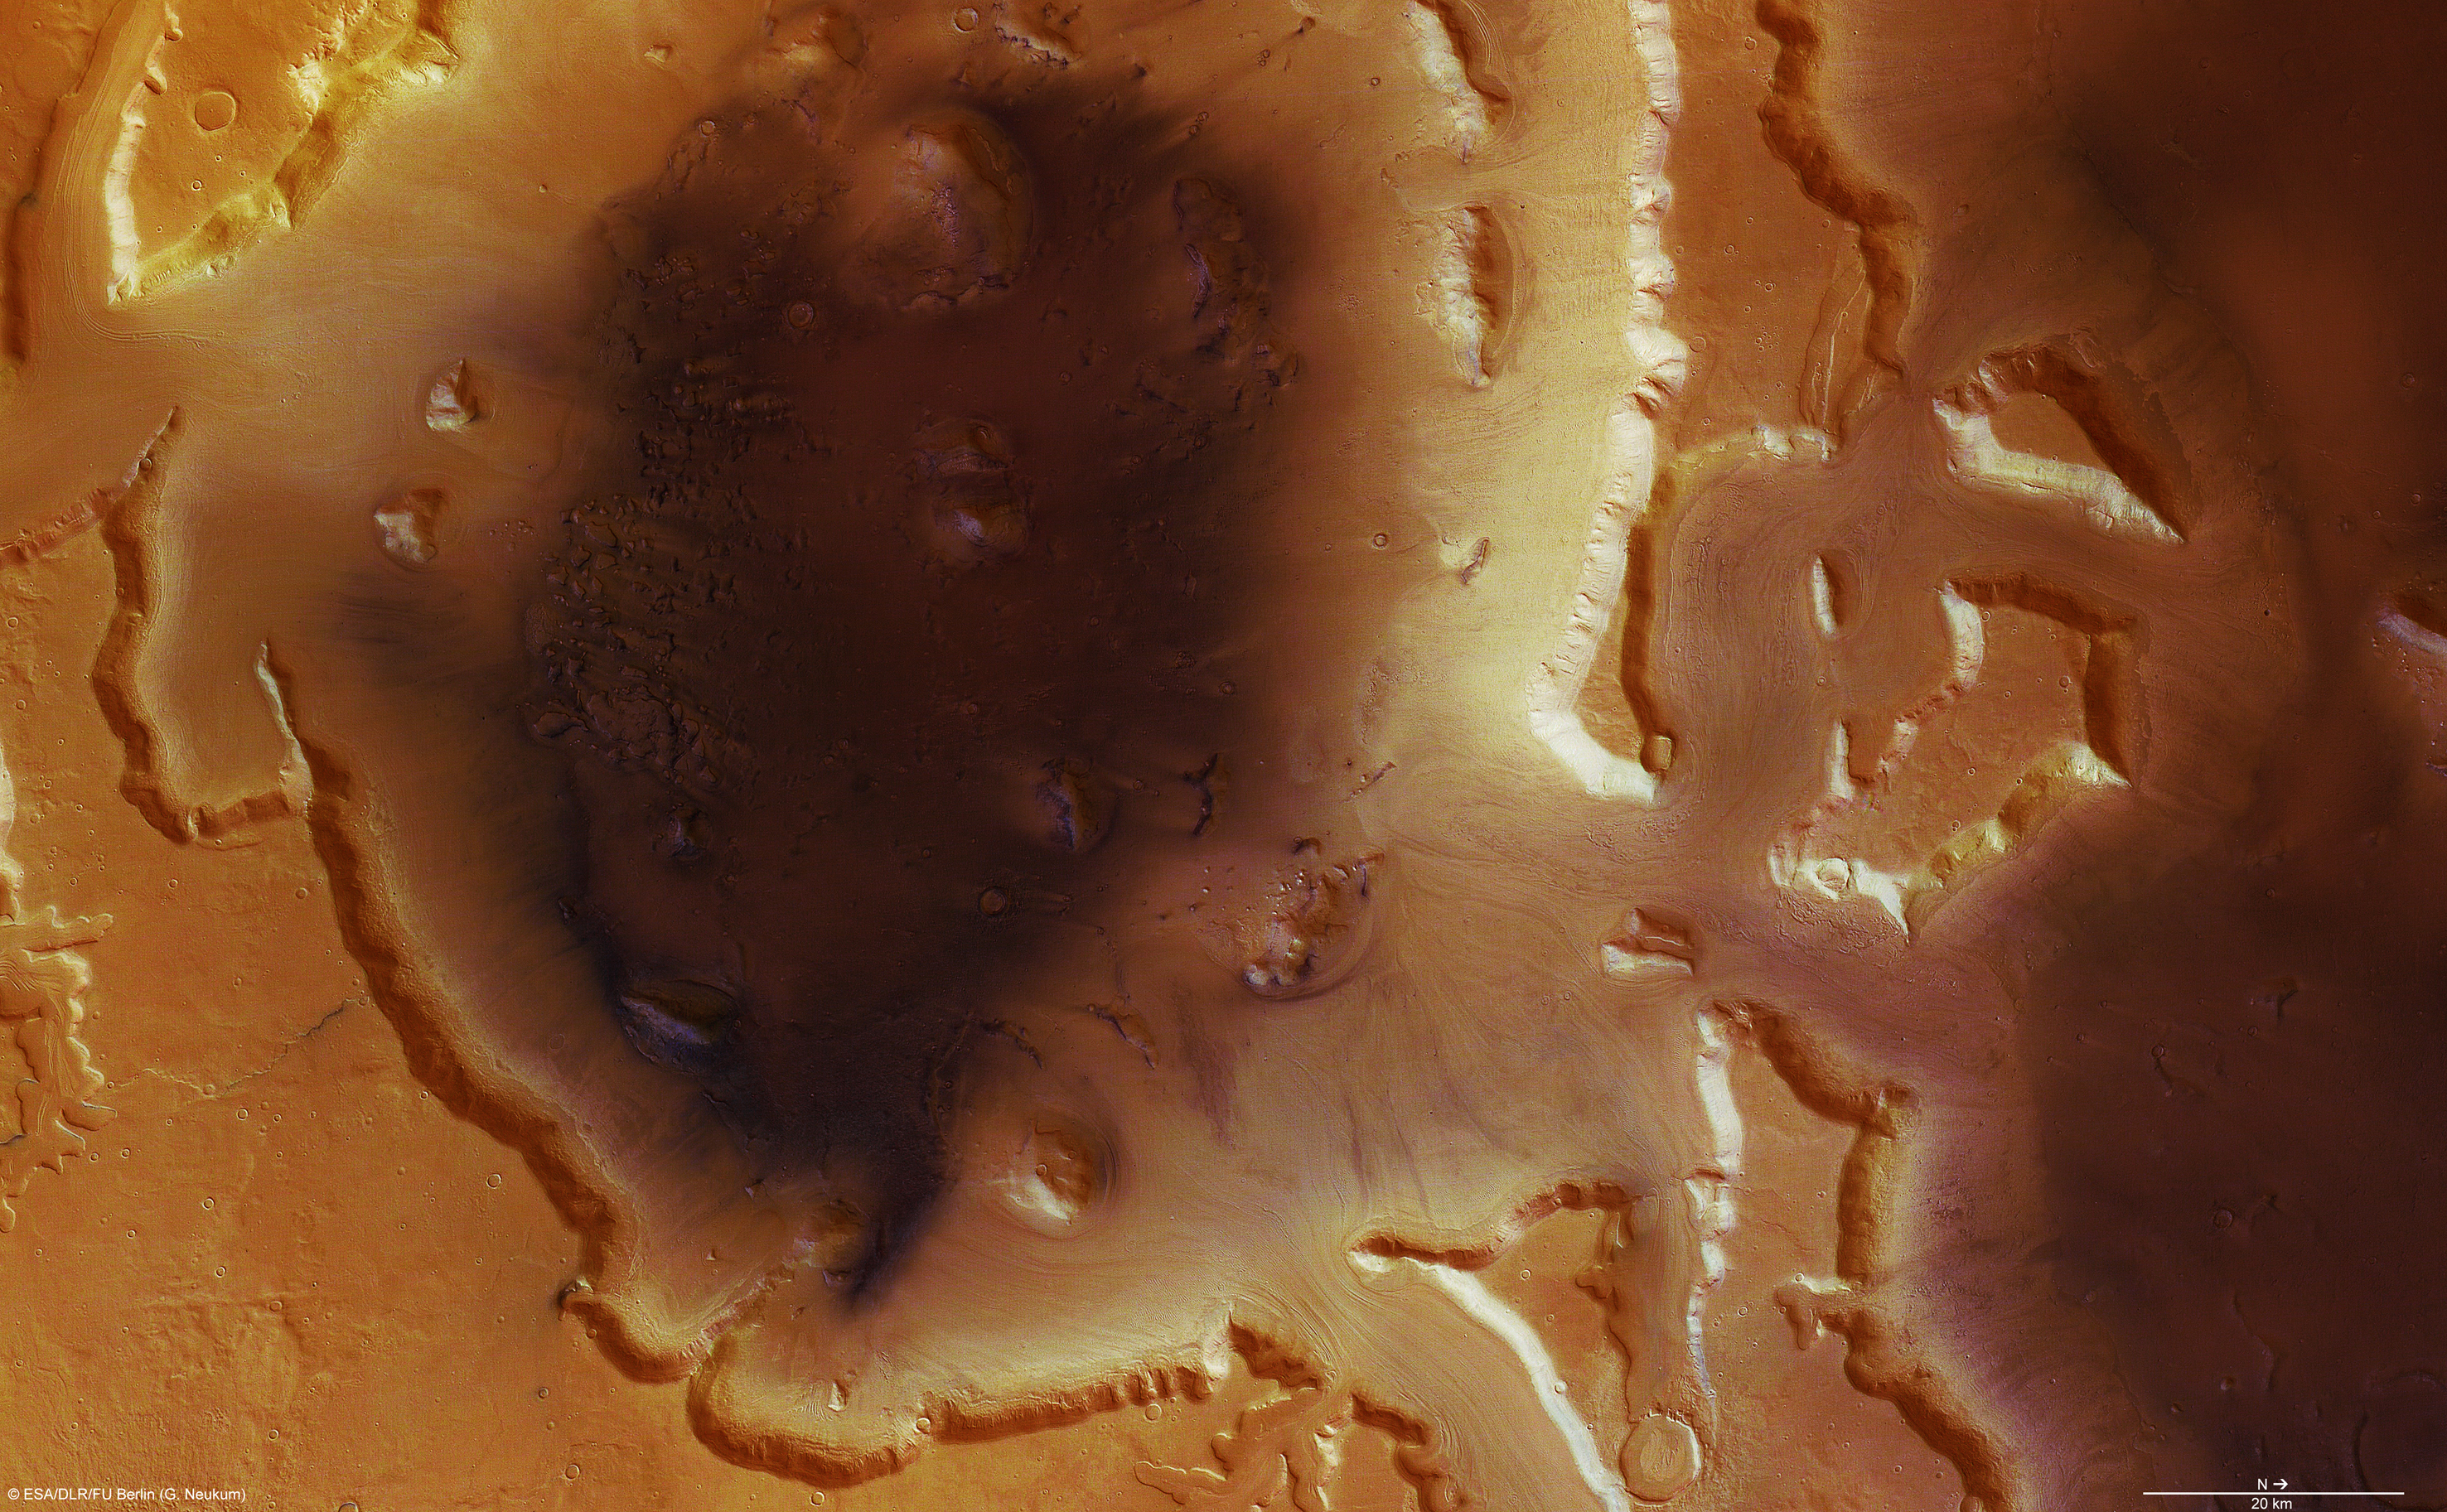 Deuteronilus Mensae Mars